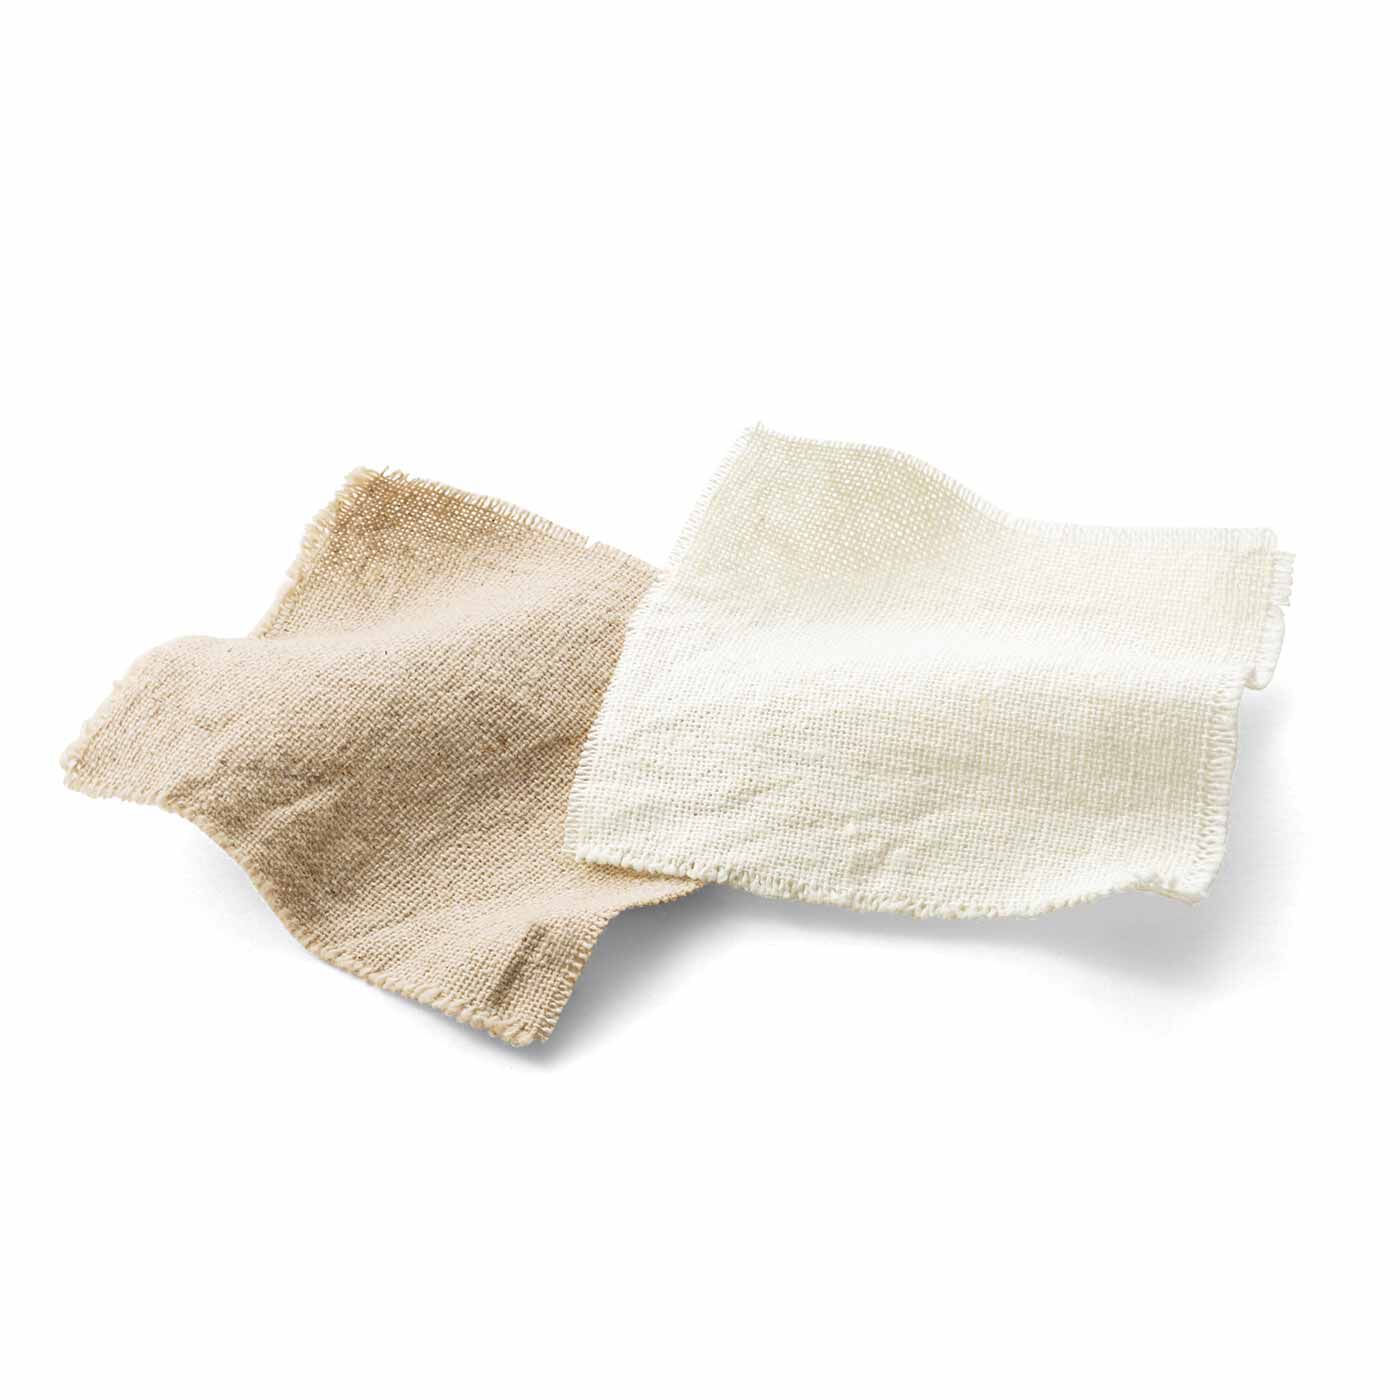 SeeMONO|心地よいおうち時間 綿麻素材のHYGGEエプロン〈NATURAL〉|長く愛用して味わいを深めたい綿麻素材。